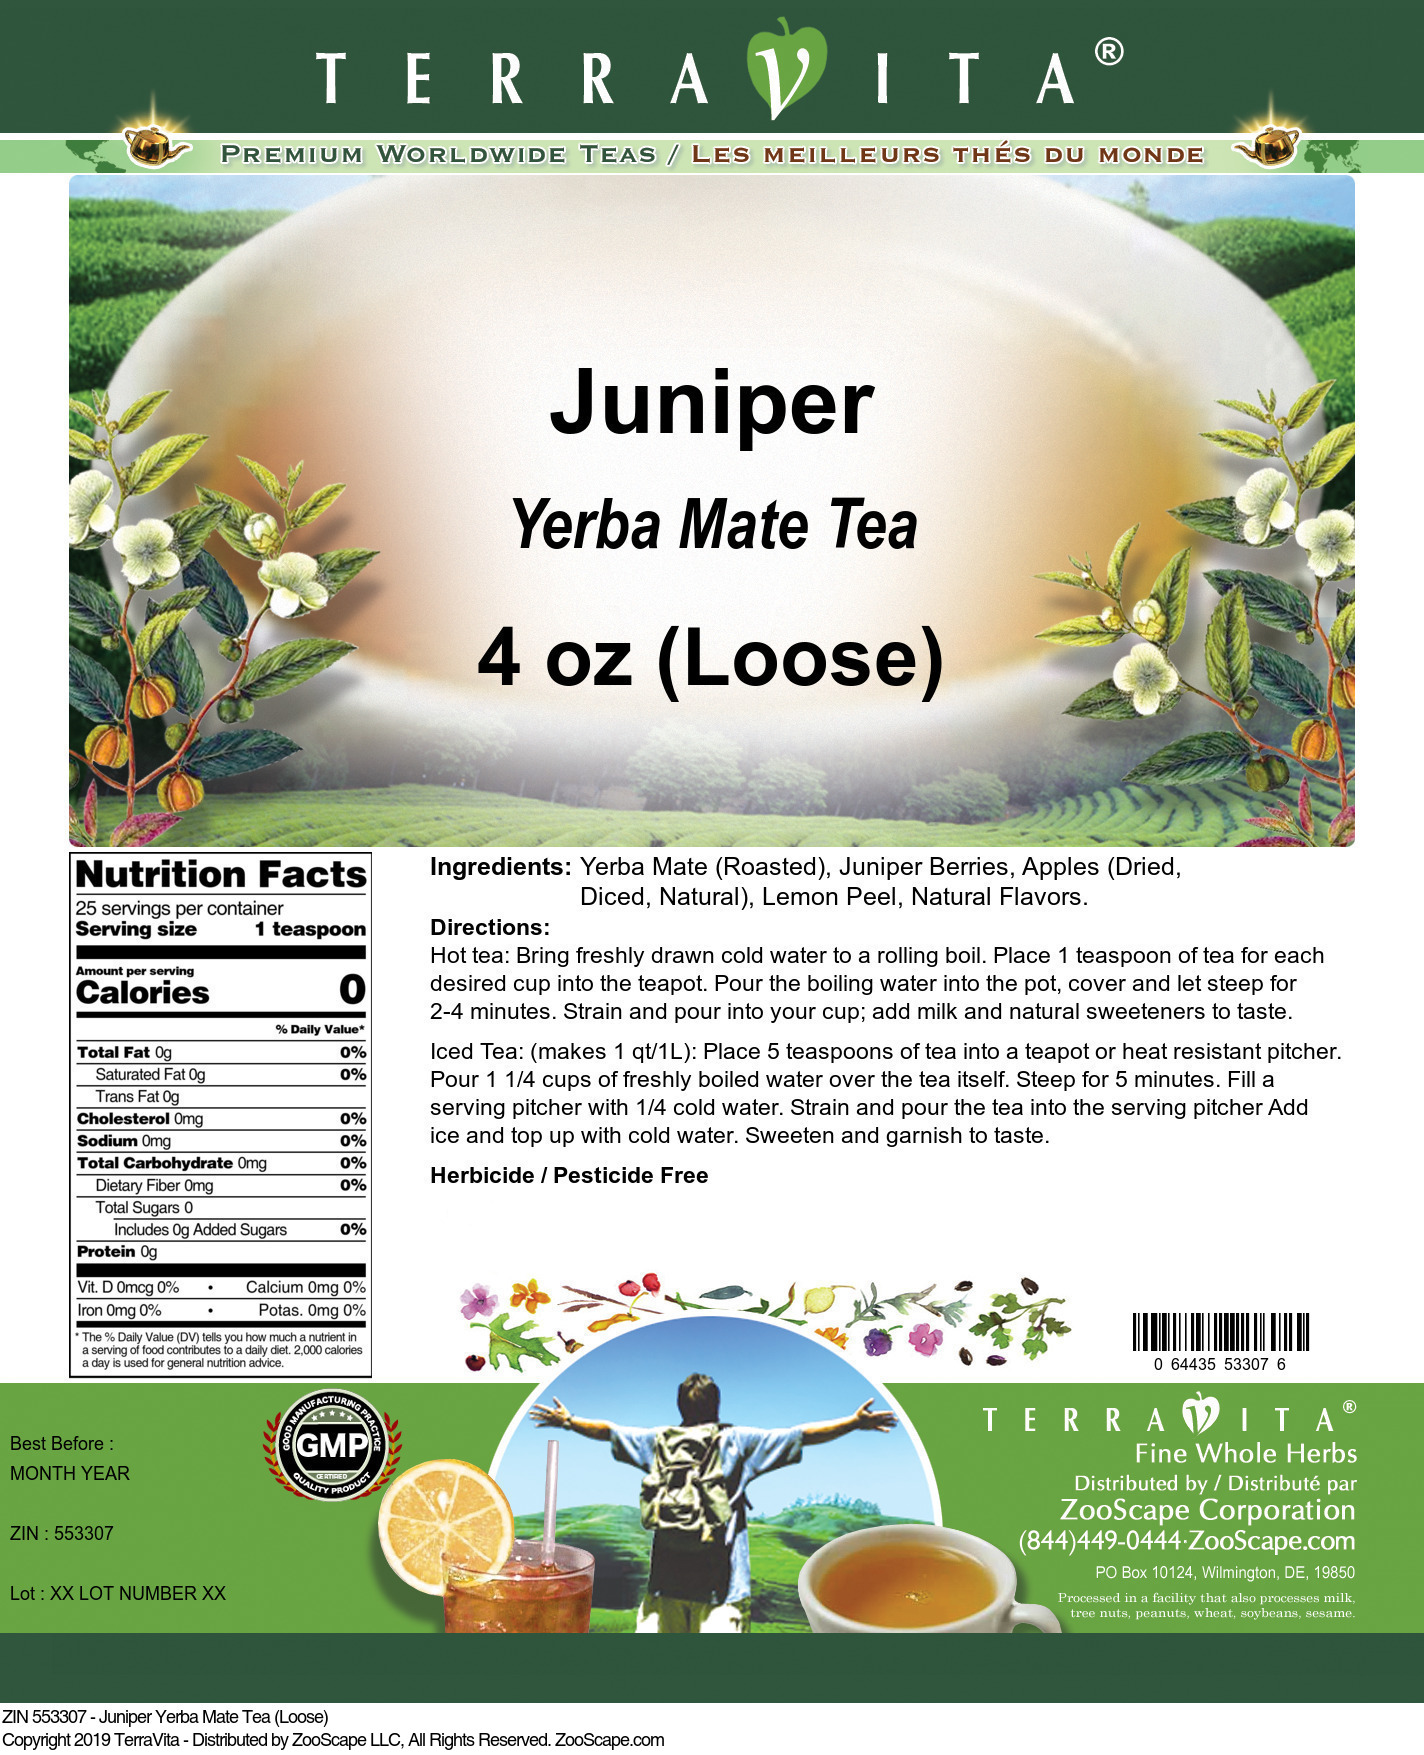 Juniper Yerba Mate Tea (Loose) - Label